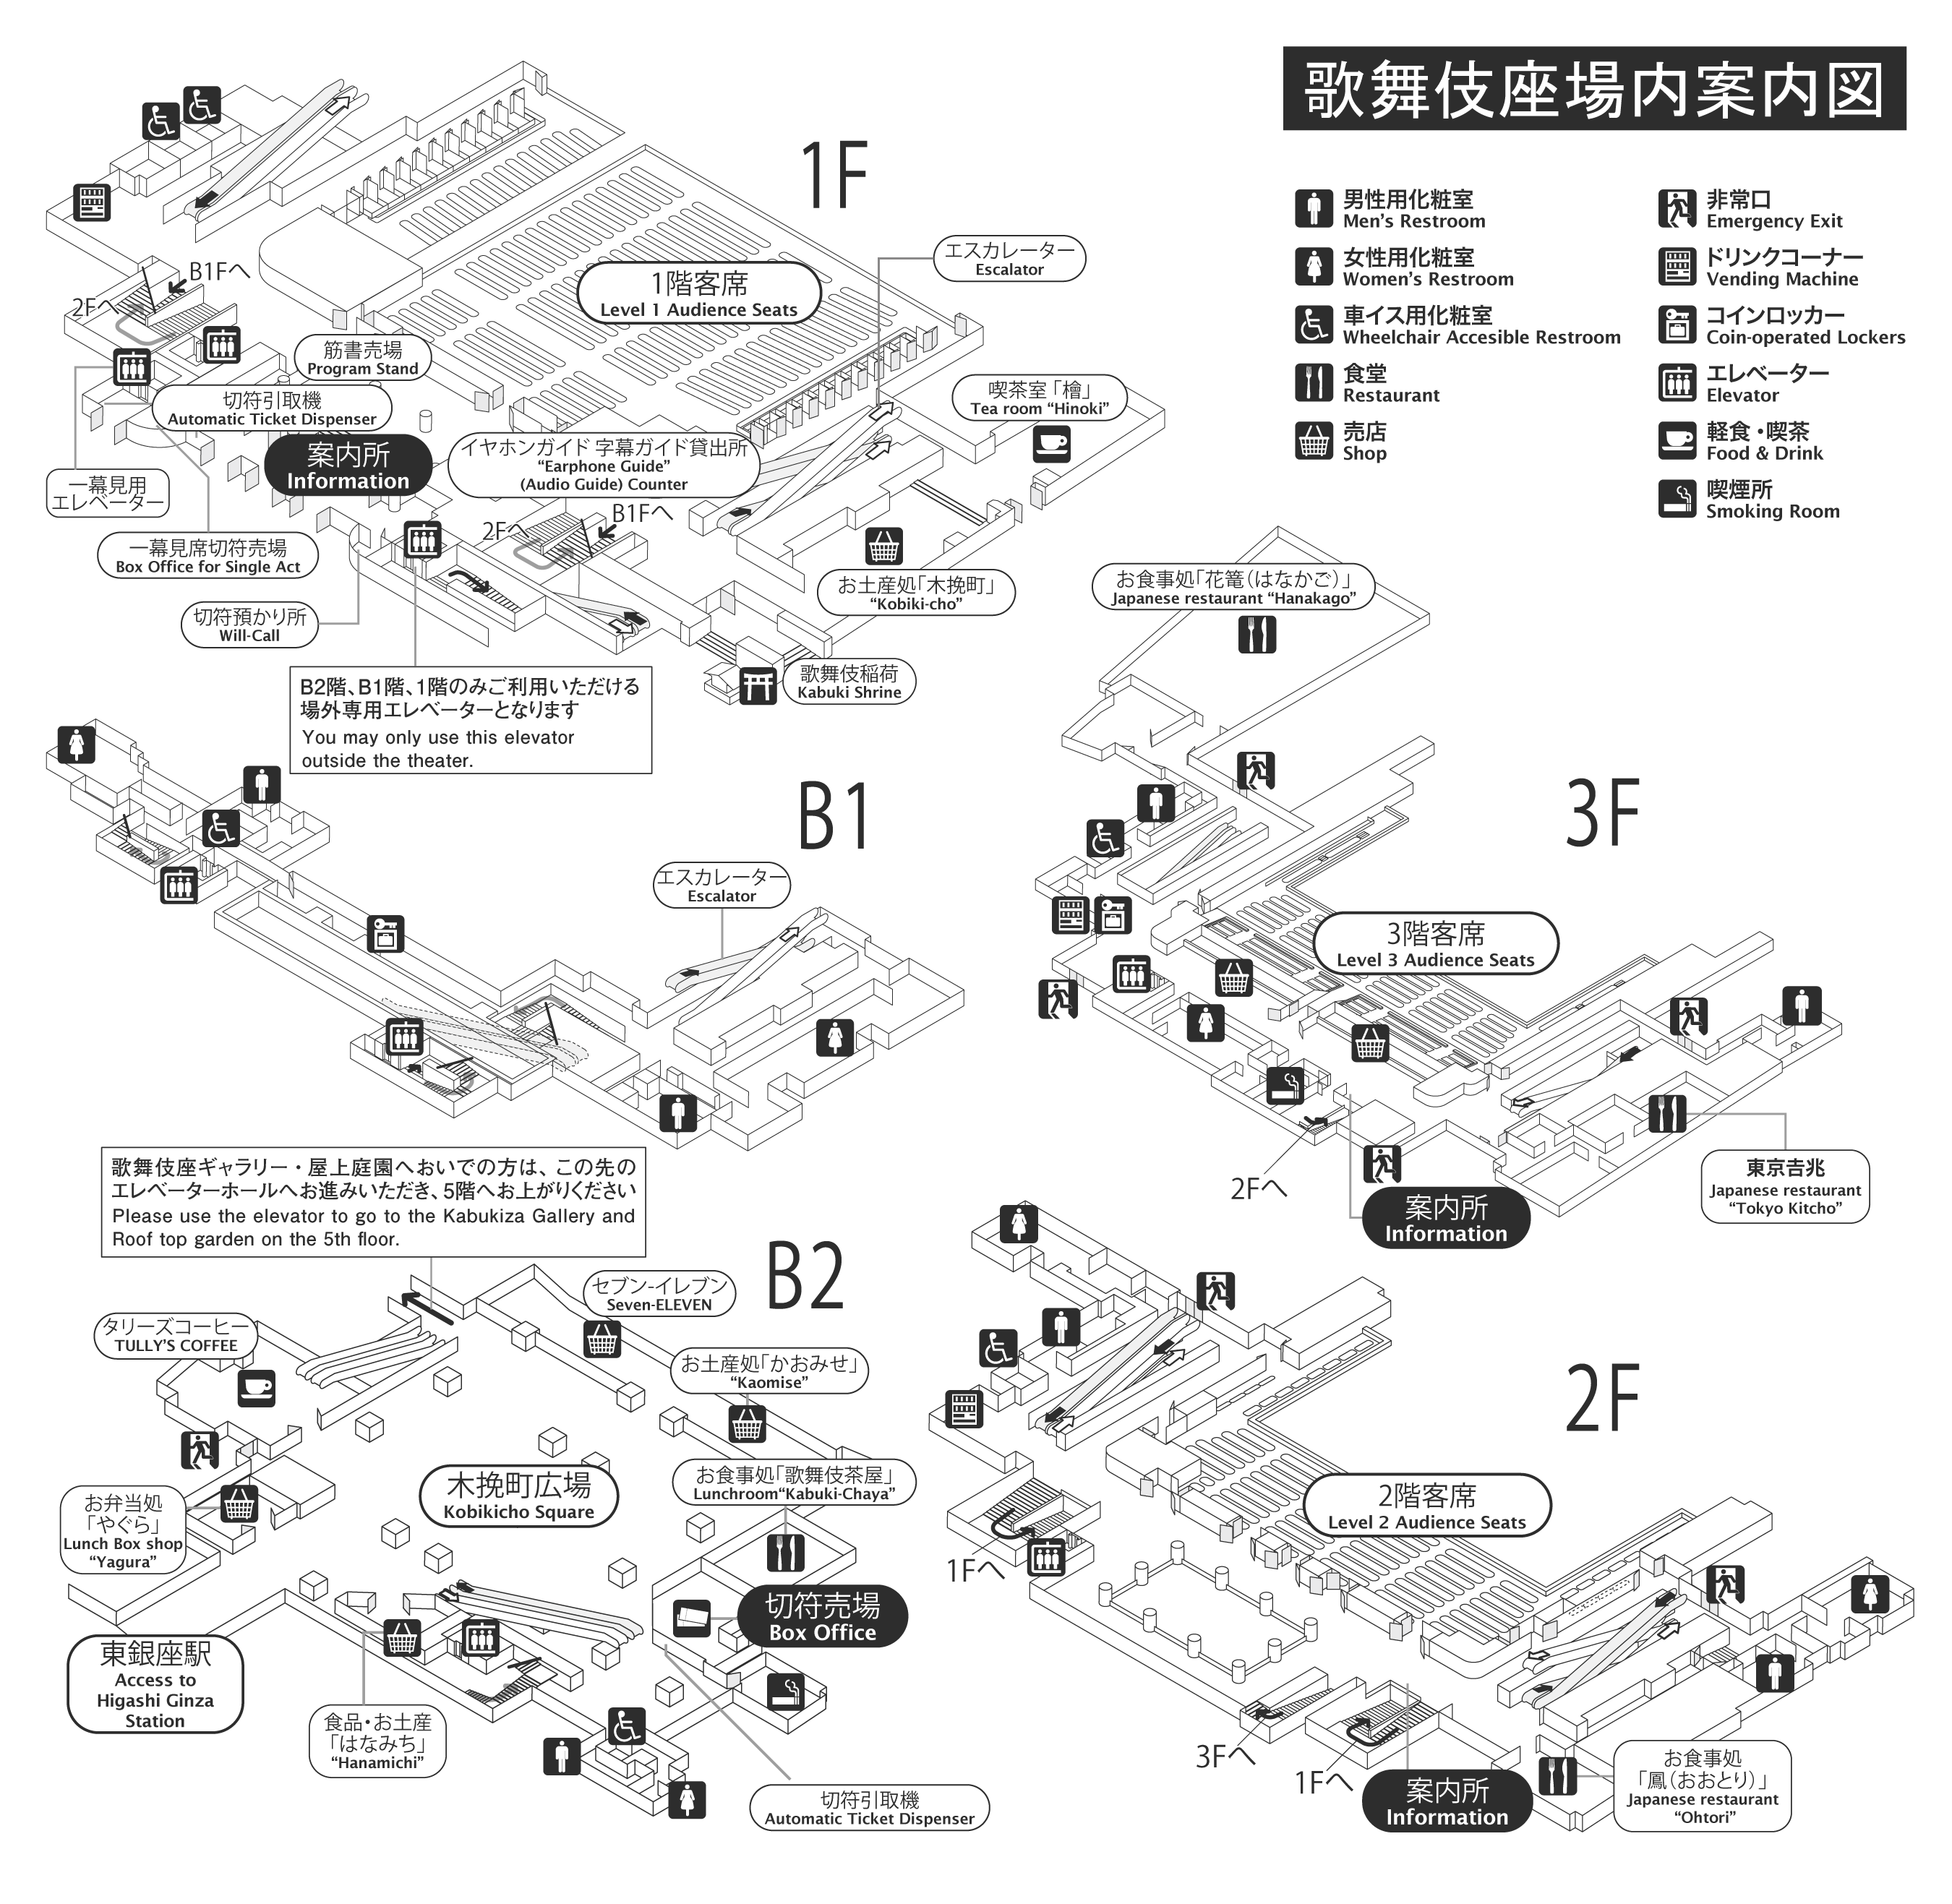 歌舞伎座の劇場施設情報